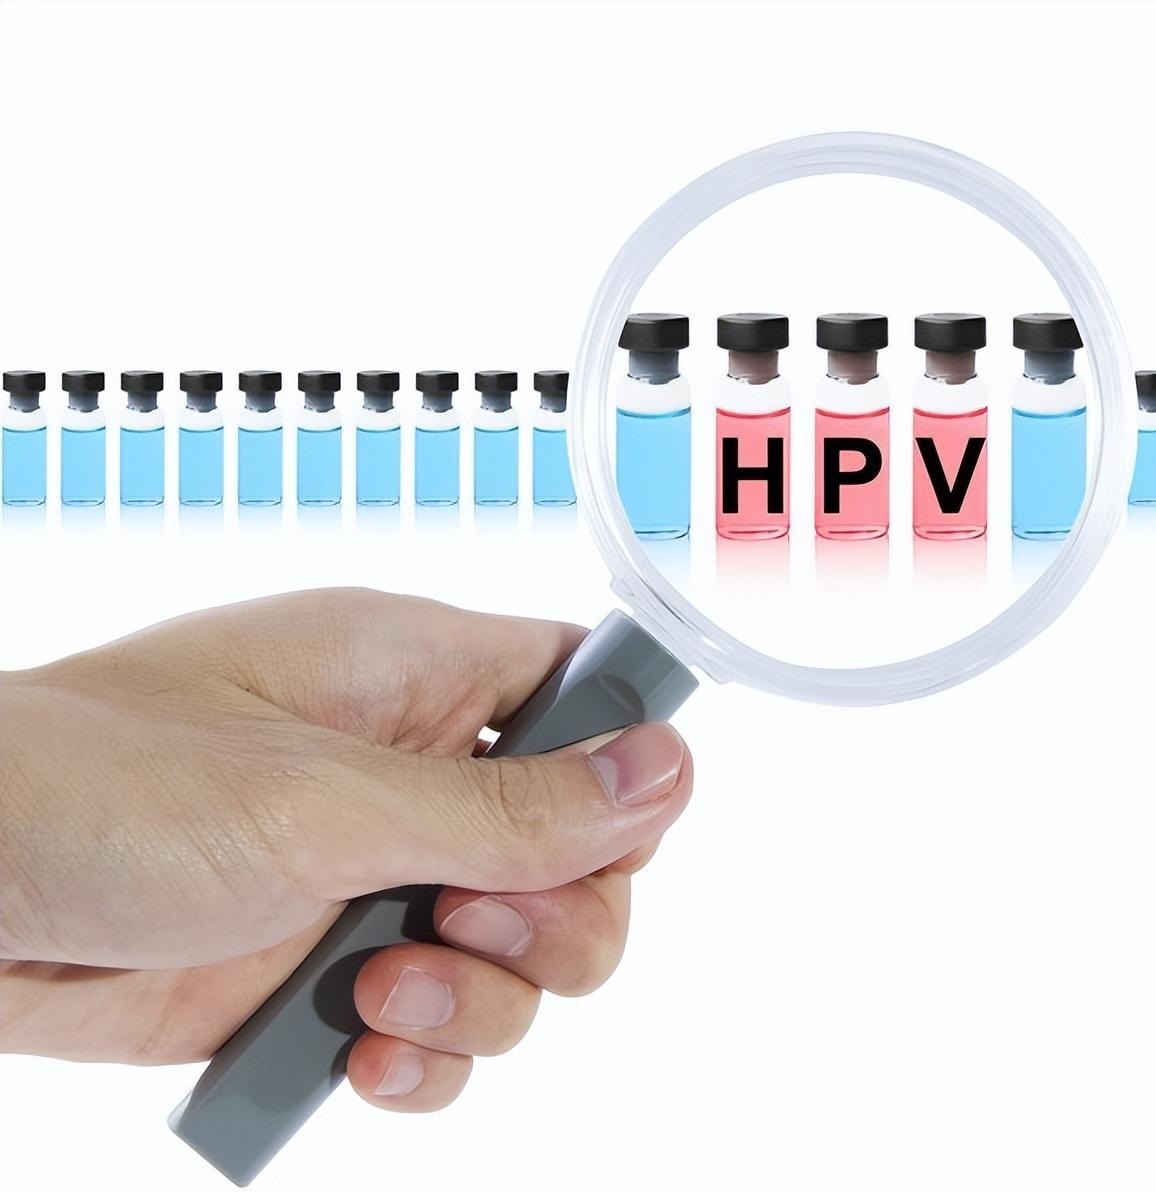 患上HPV是一种常见的性传播疾病，会导致许多不适和痛苦，包括生殖器疣、疼痛和不适等症状。